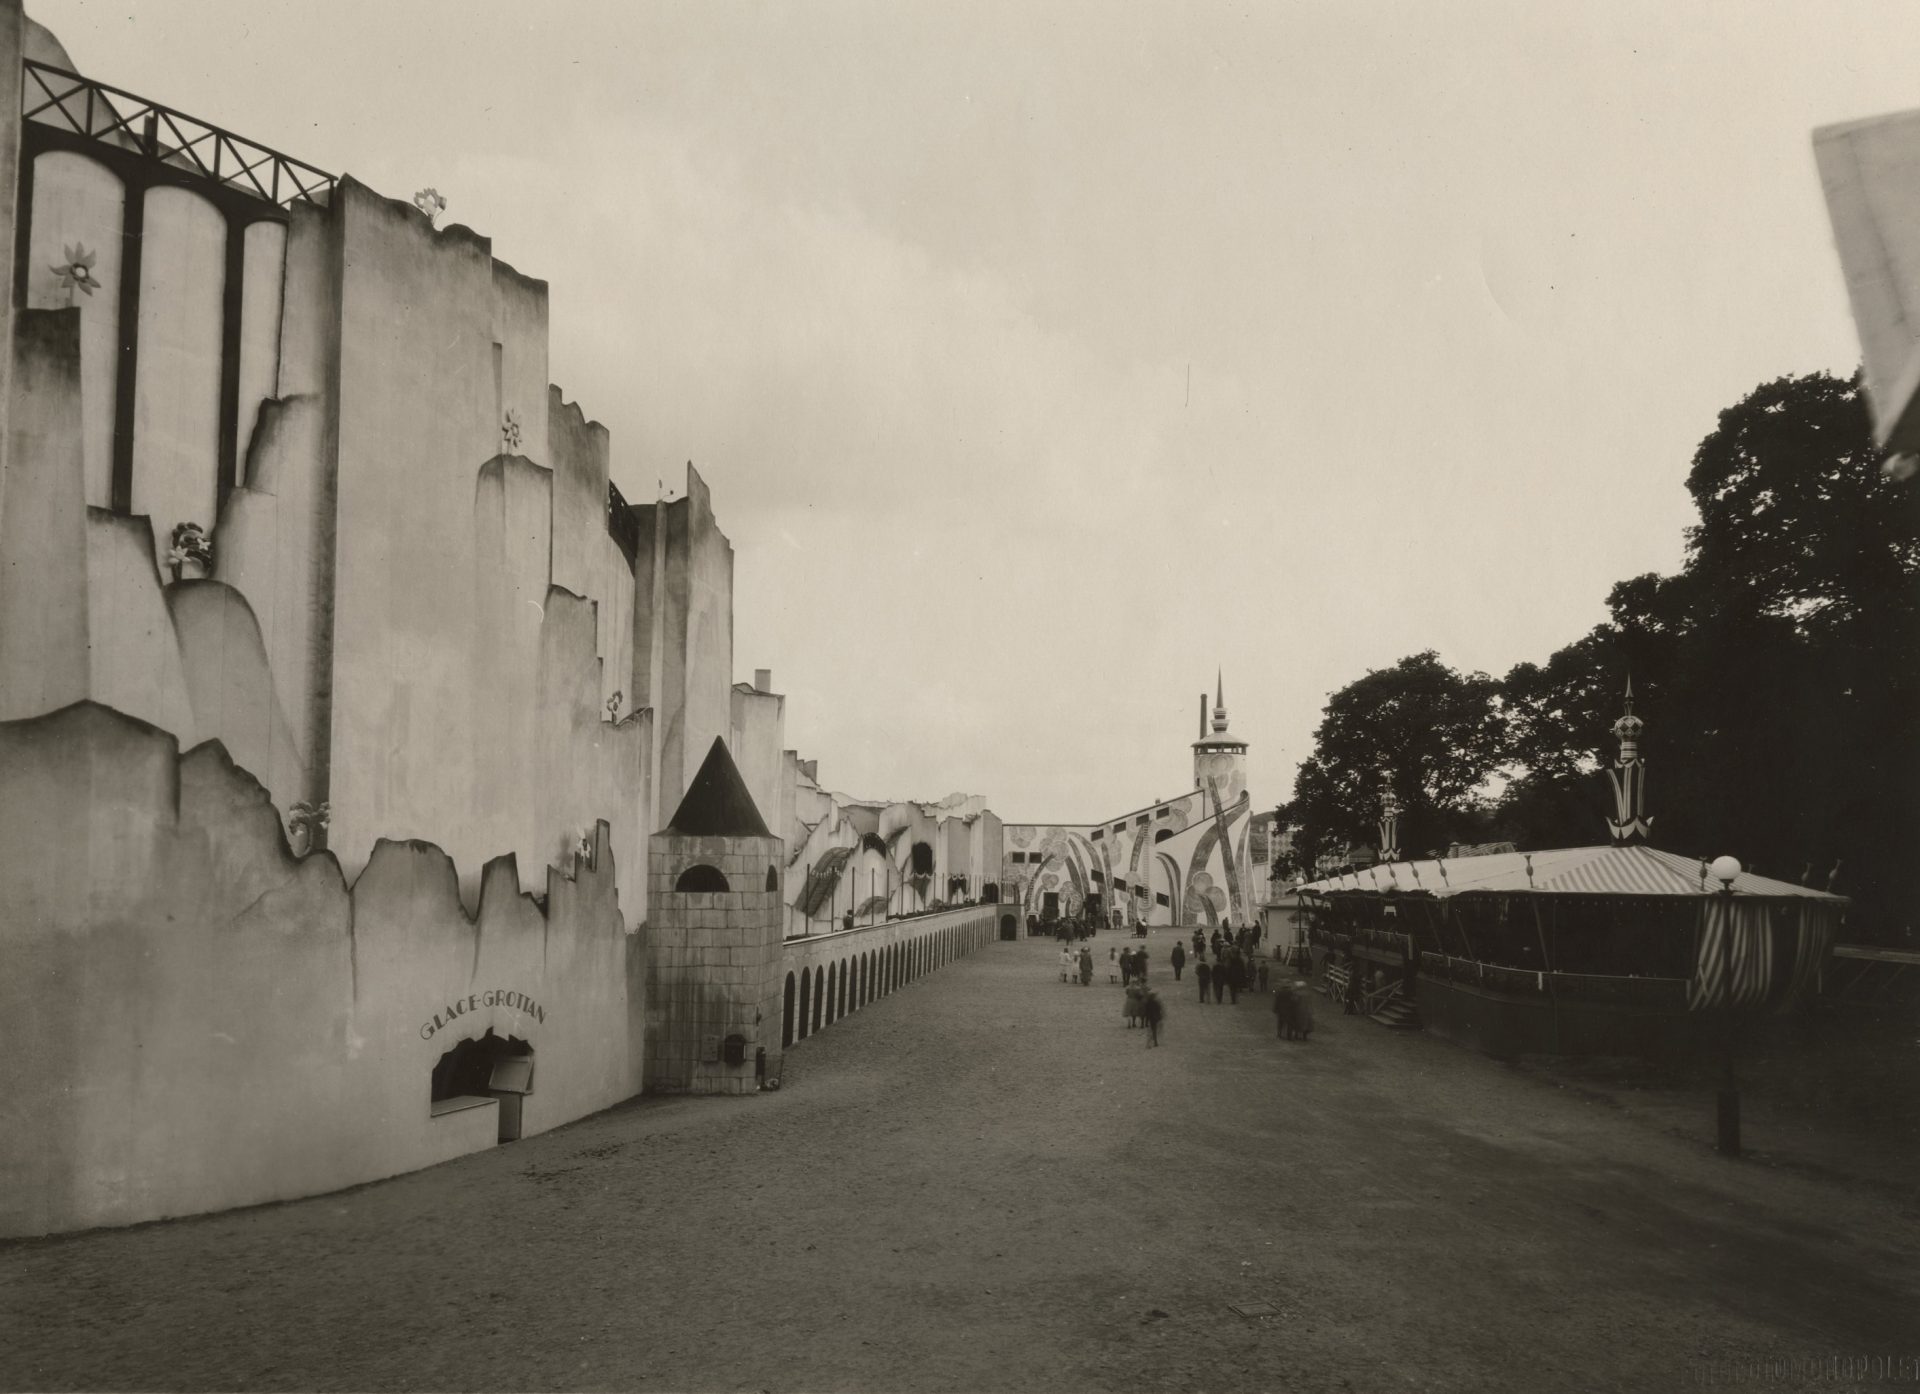 Svartvit bild från utställningen i Göteborg 1923. I förgrunden en byggnad med skylten "Glace-grottan".